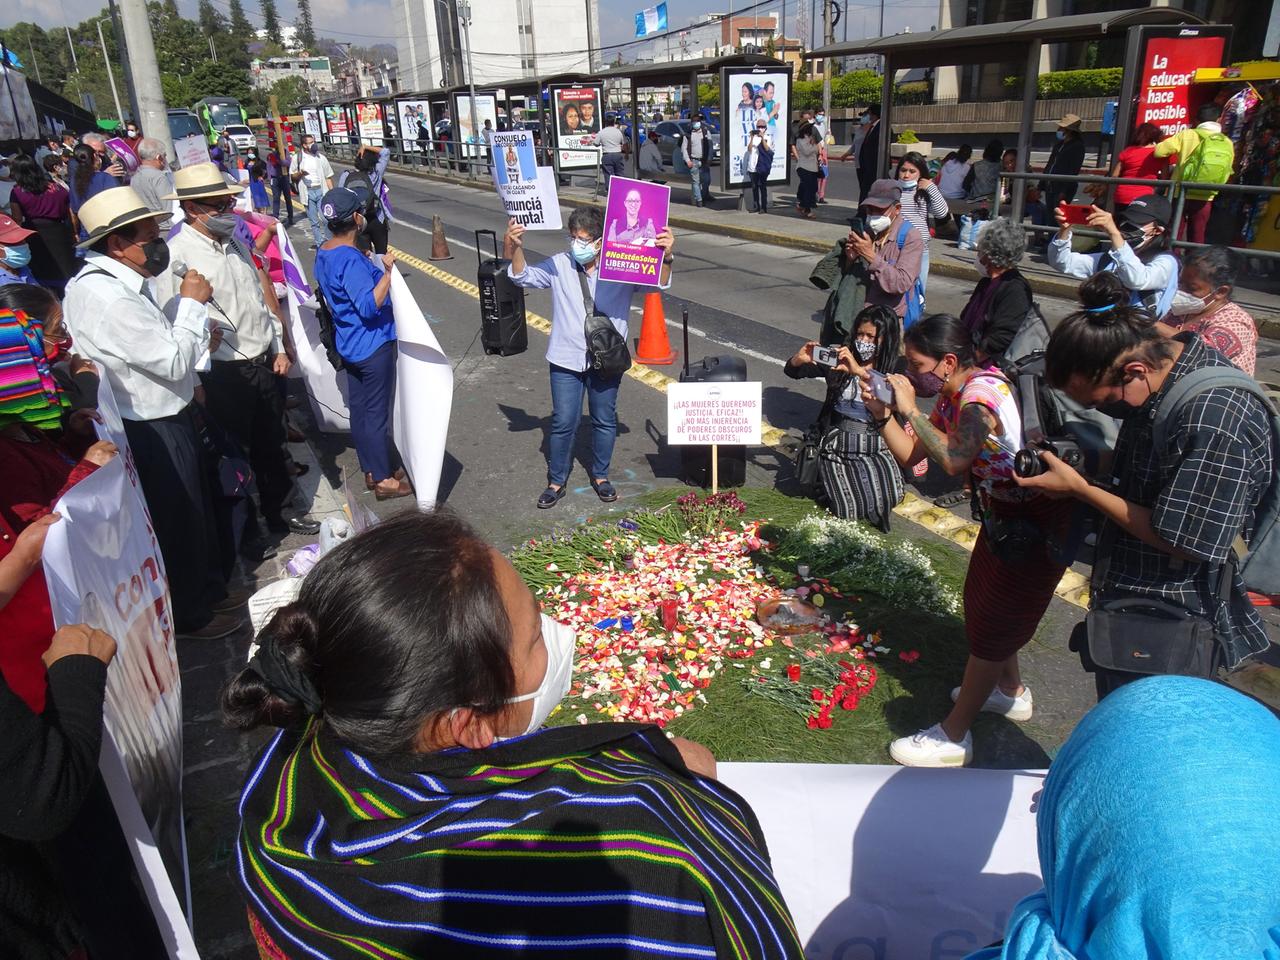 Straßenszene: Menschen mit Plakaten versammeln sich um eine kreisförmige Fläche, die mit Blütenblättern und Kerzen geschmückt ist.